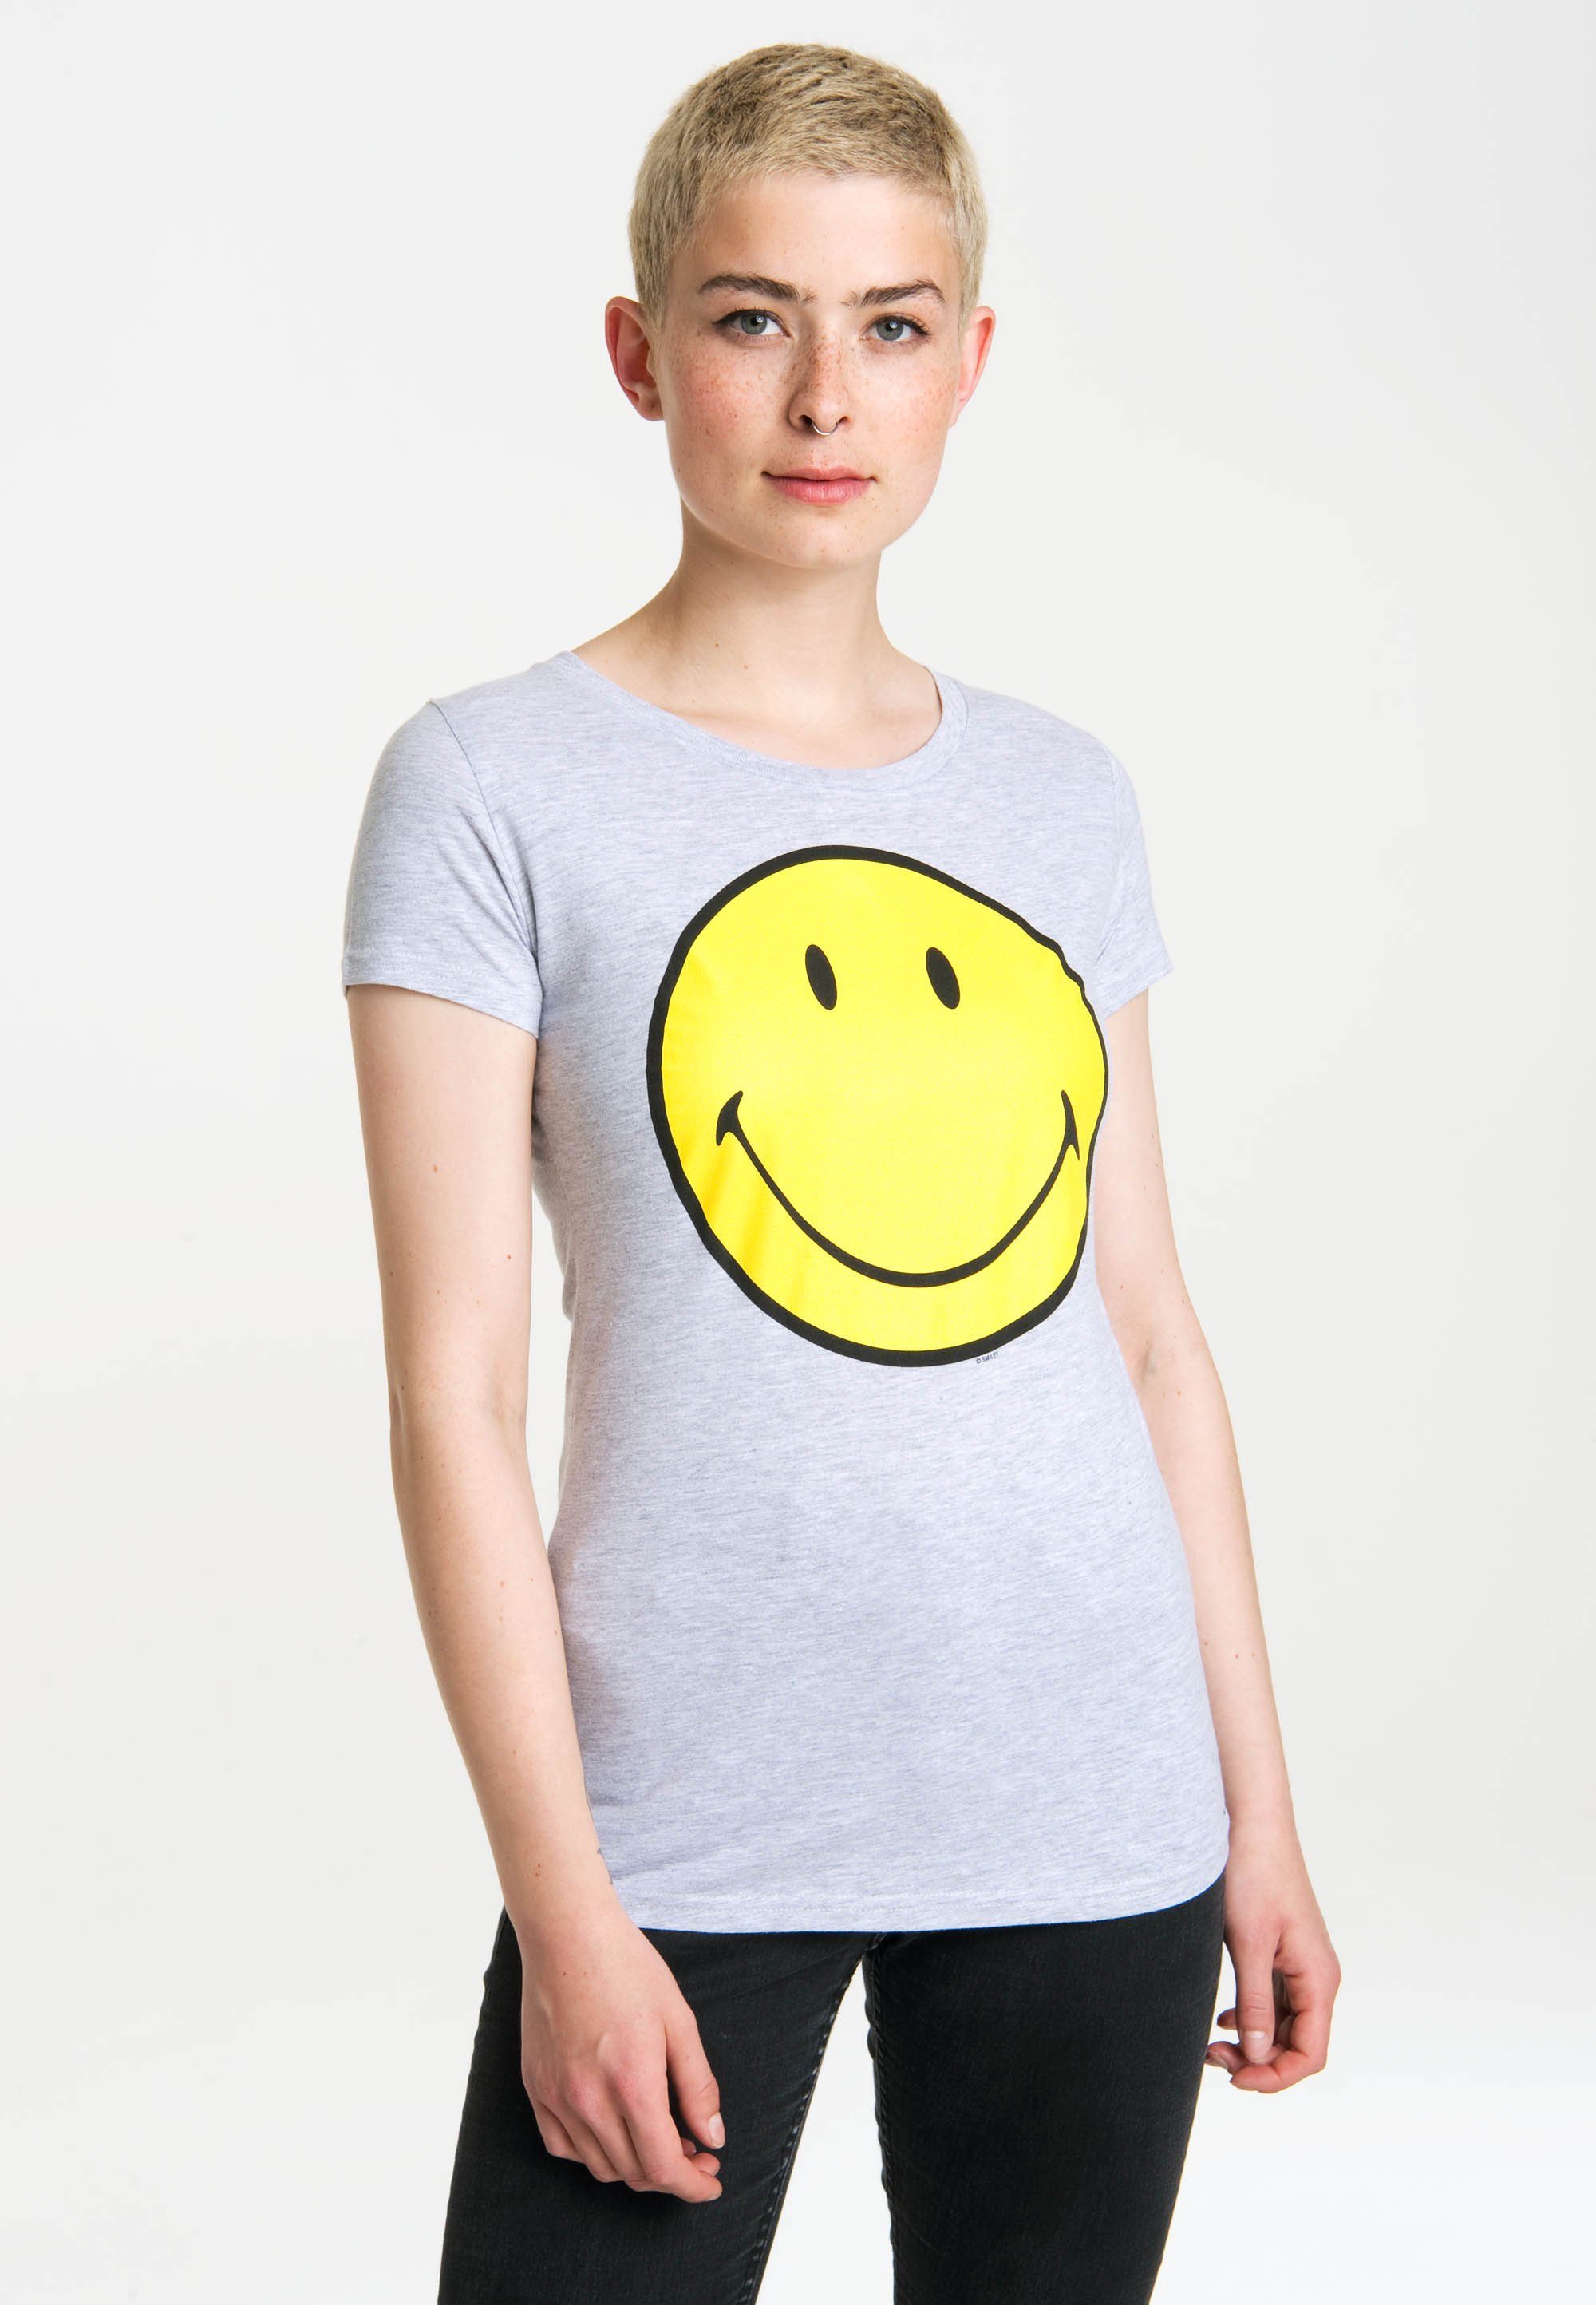 Klicken Sie hier für Informationen zu LOGOSHIRT T-Shirt lustigem Face Frontprint mit Original Smiley